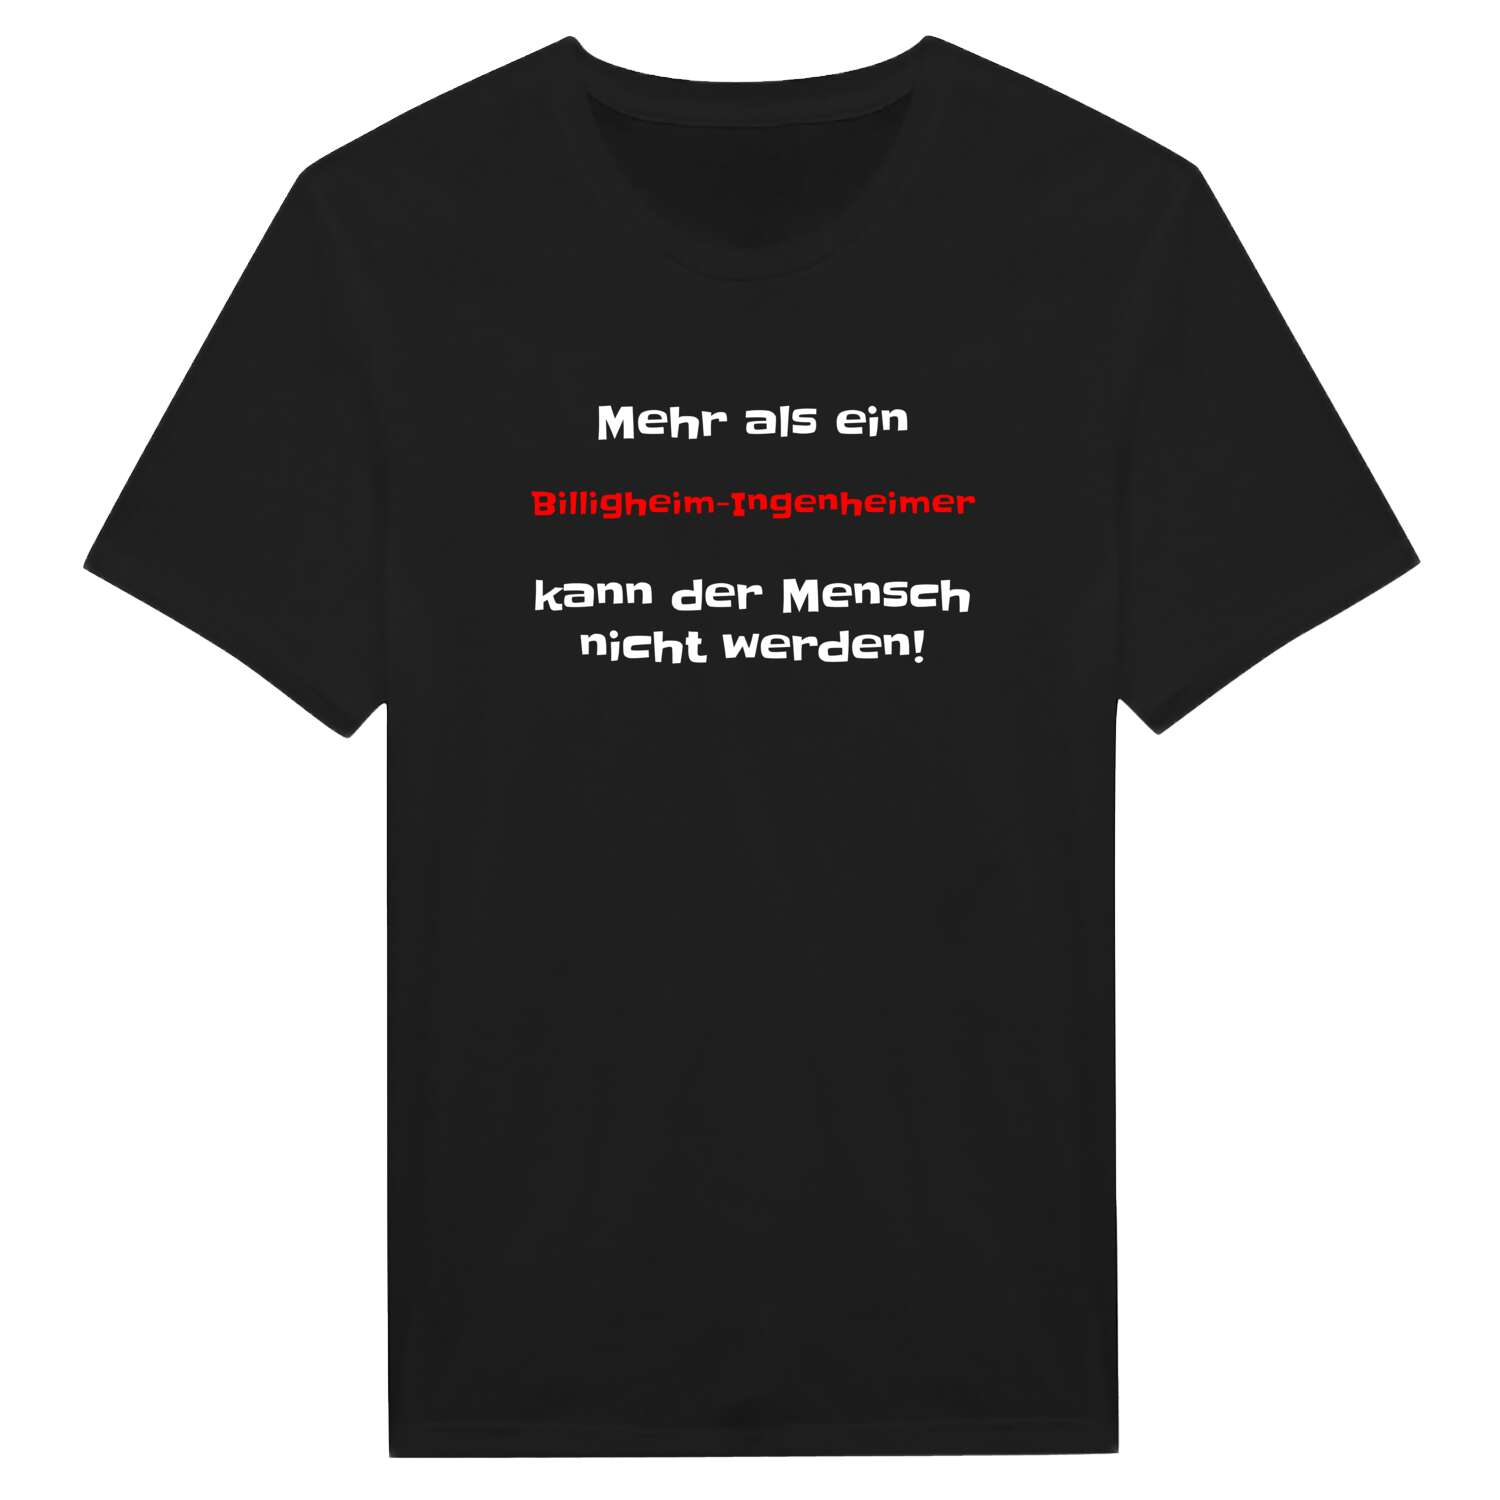 Billigheim-Ingenheim T-Shirt »Mehr als ein«